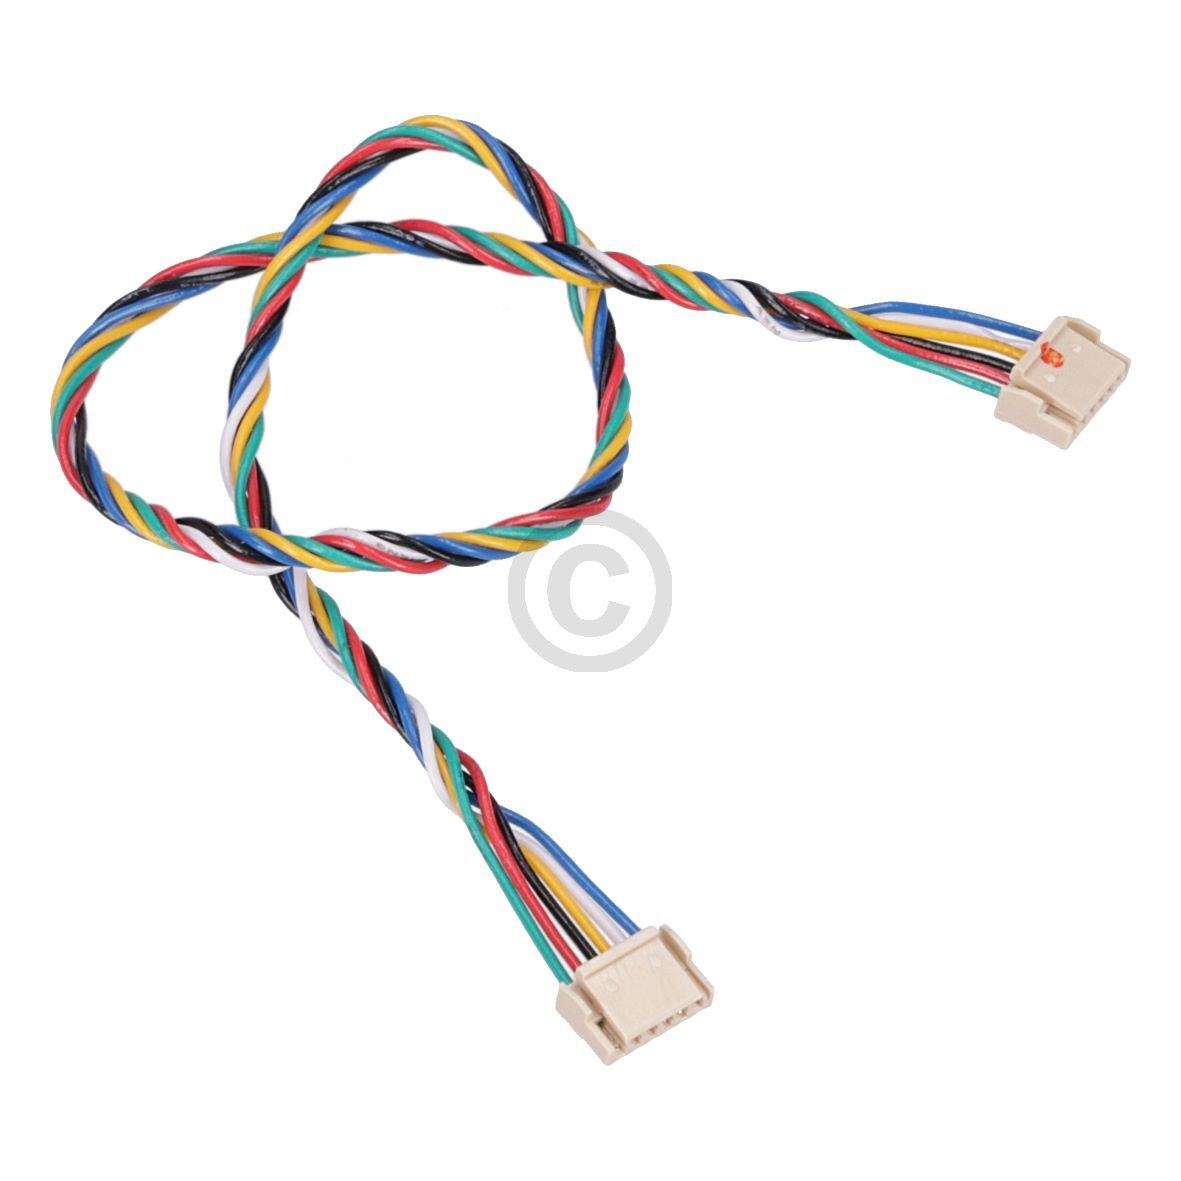 Power supply wire 201-2230-0025